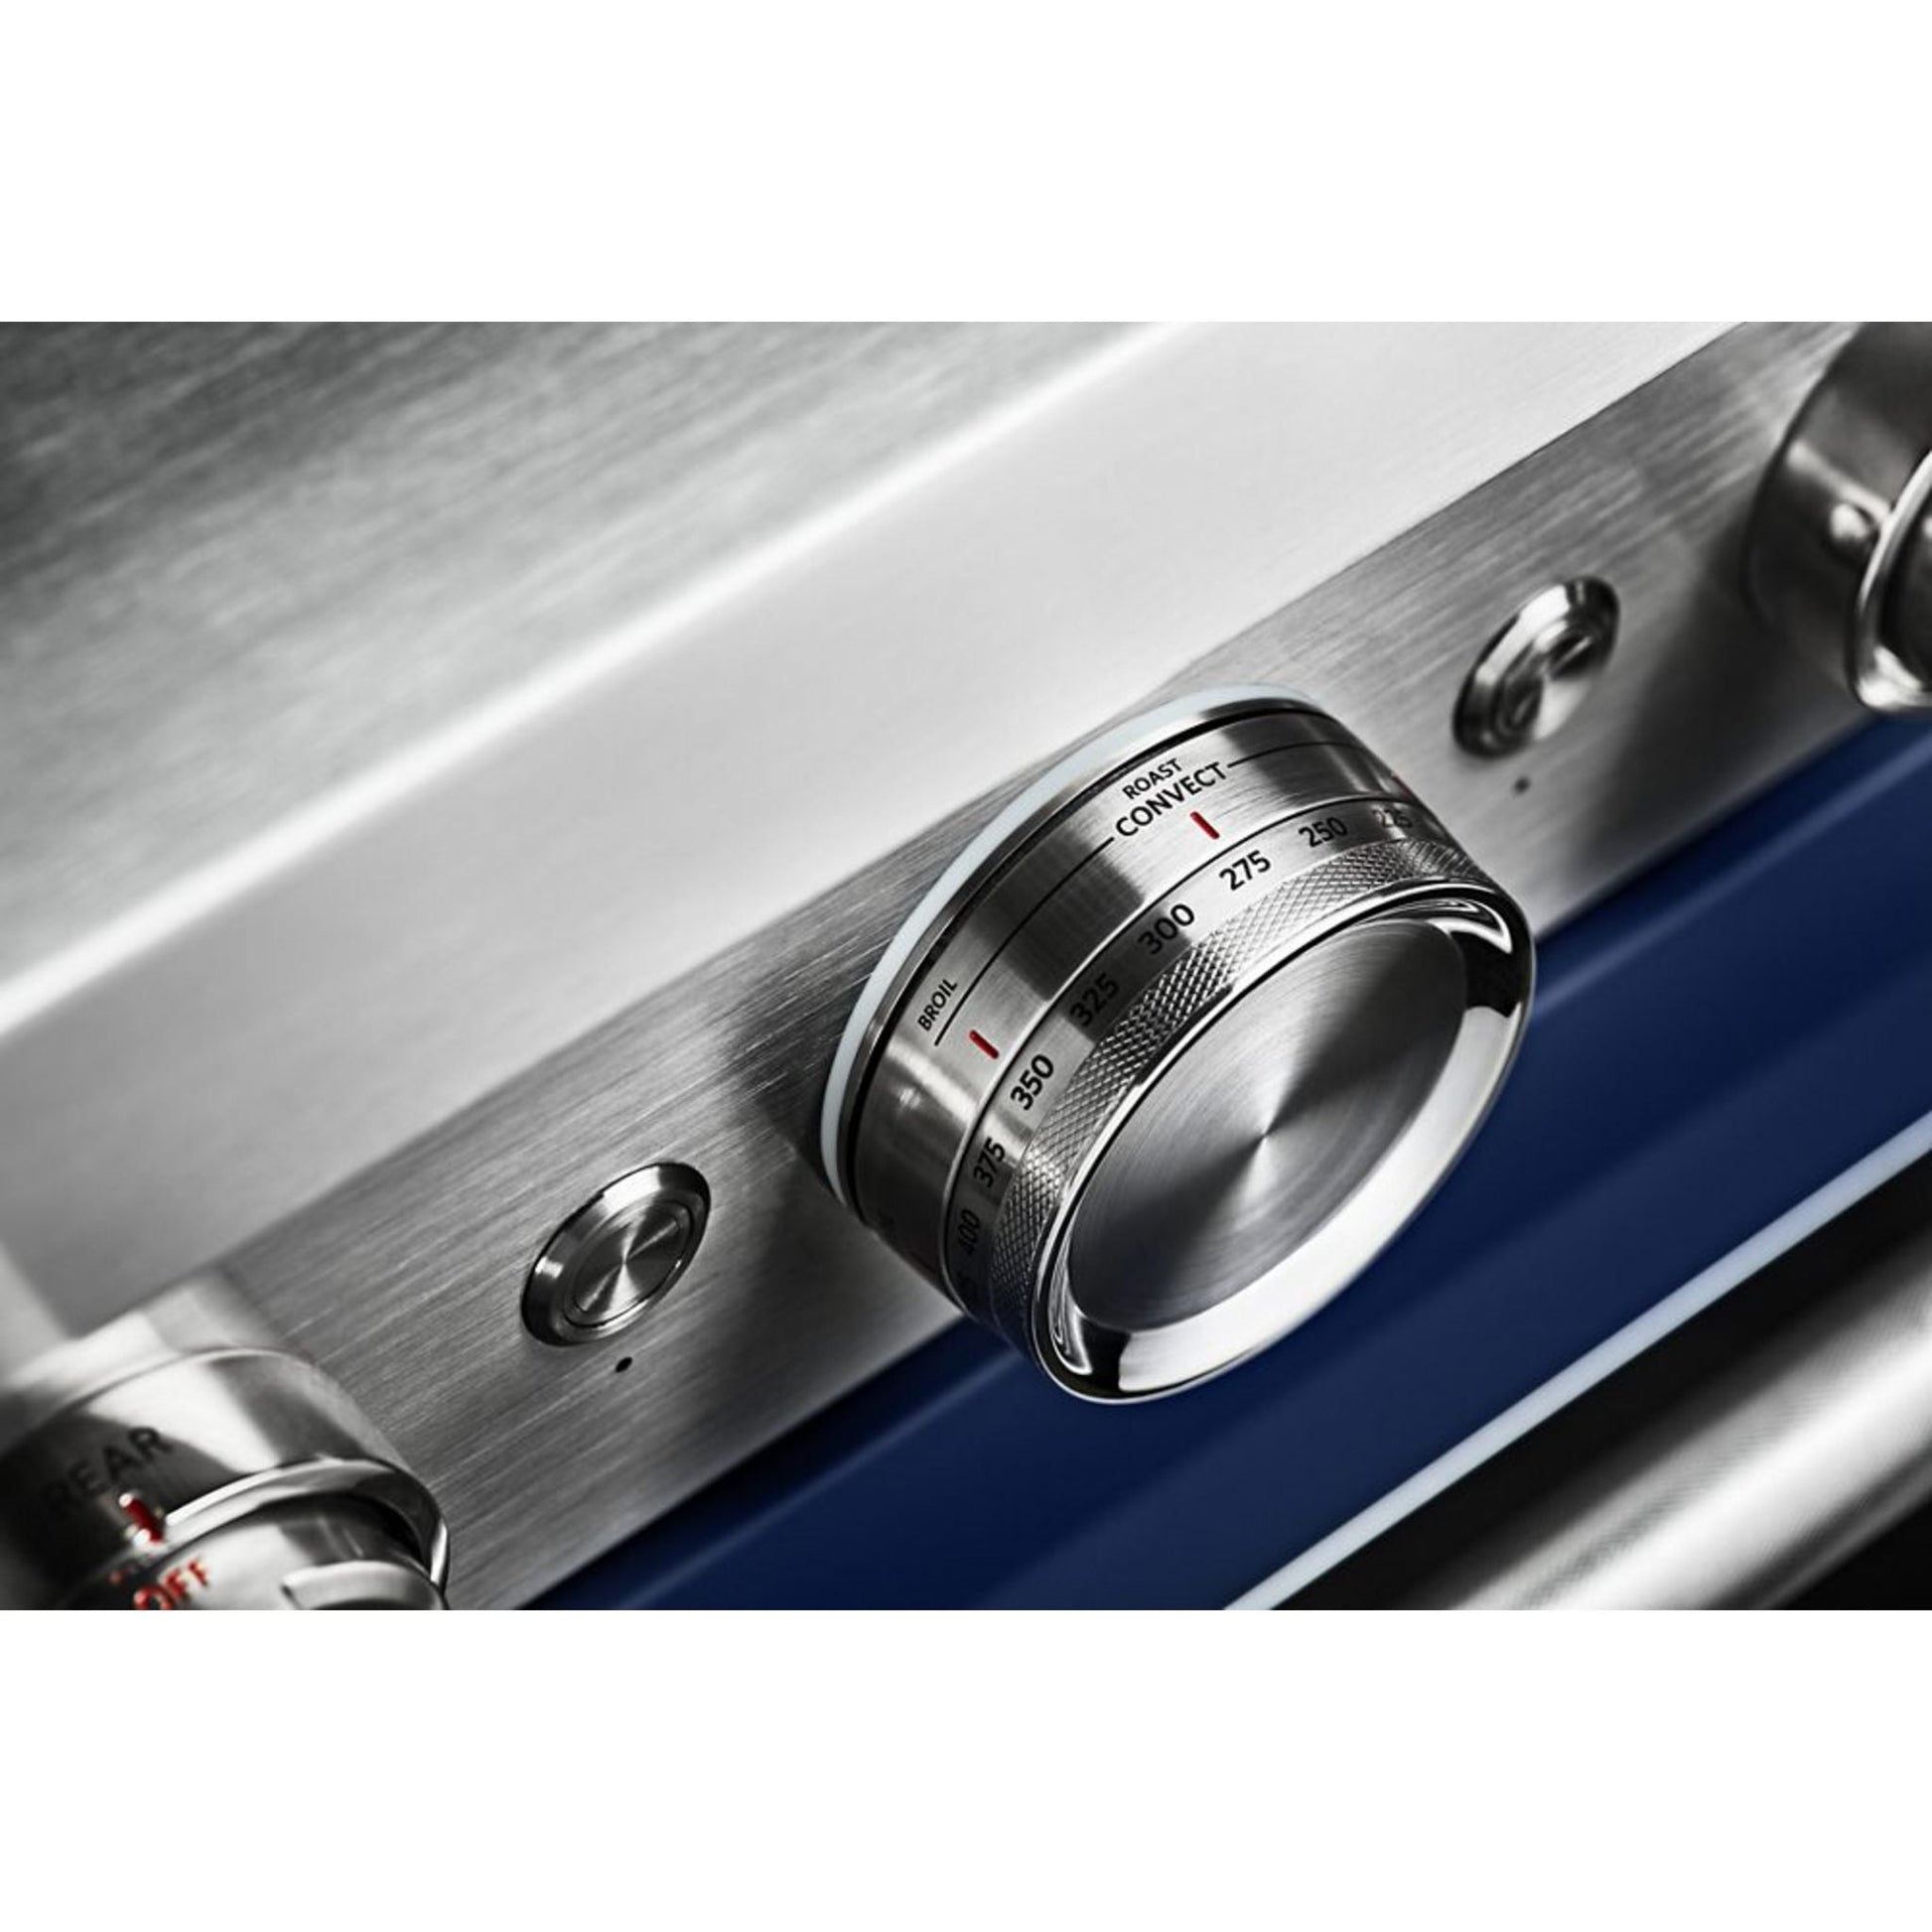 KitchenAid Dual Fuel Range (KFDC506JMB) - Misty Blue